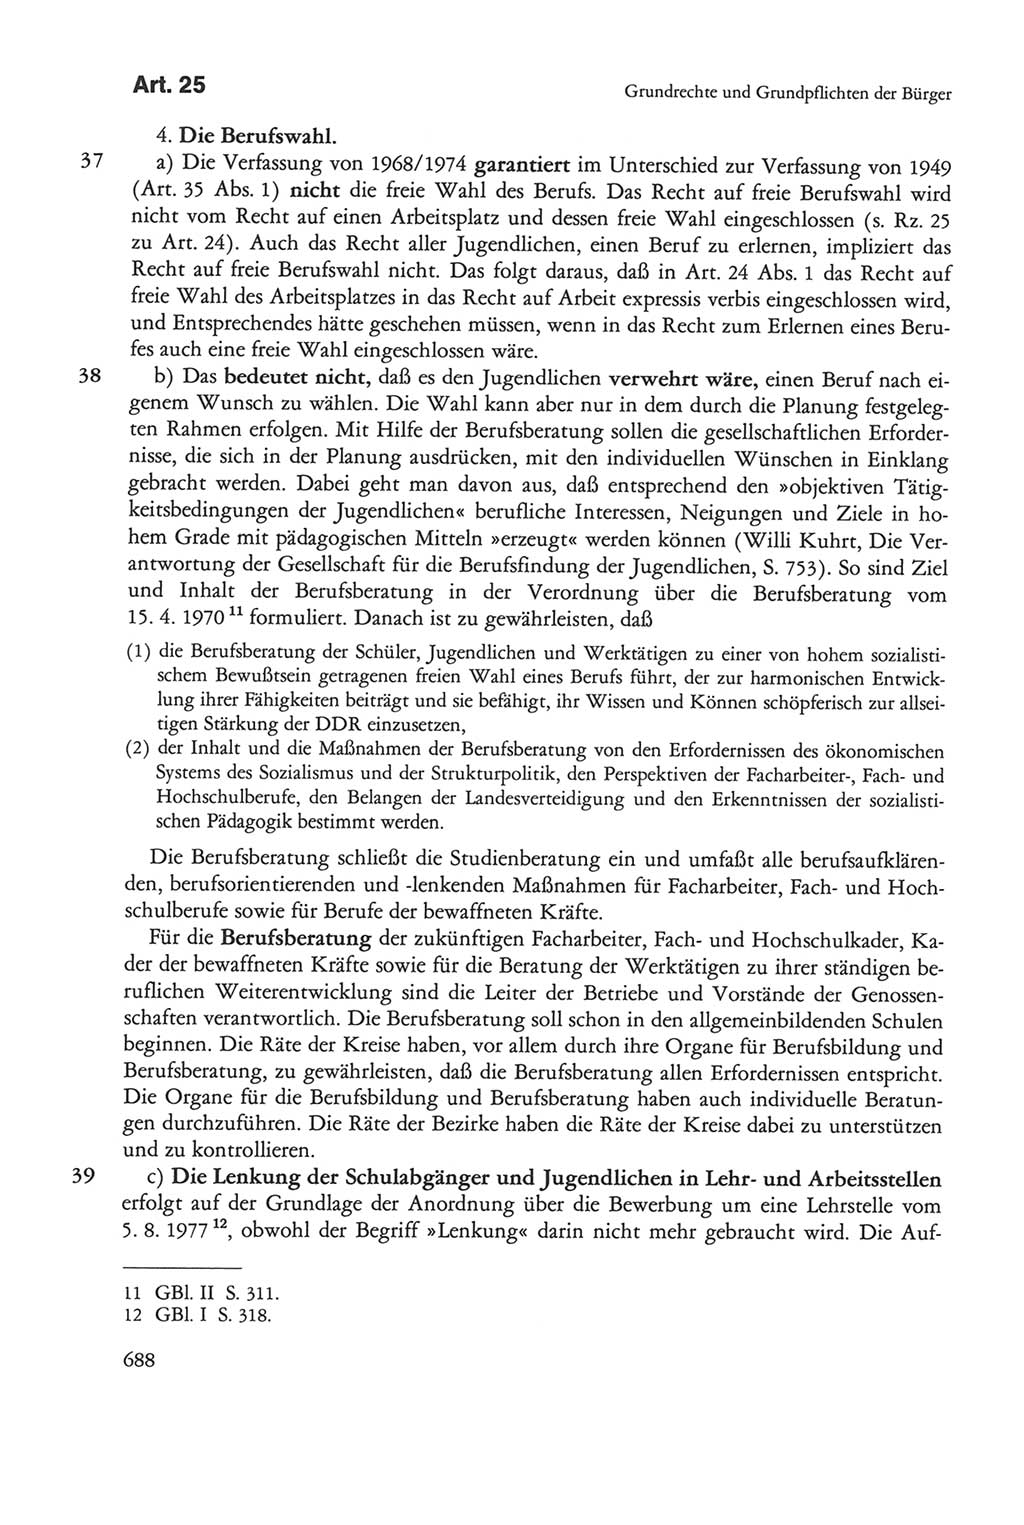 Die sozialistische Verfassung der Deutschen Demokratischen Republik (DDR), Kommentar 1982, Seite 688 (Soz. Verf. DDR Komm. 1982, S. 688)